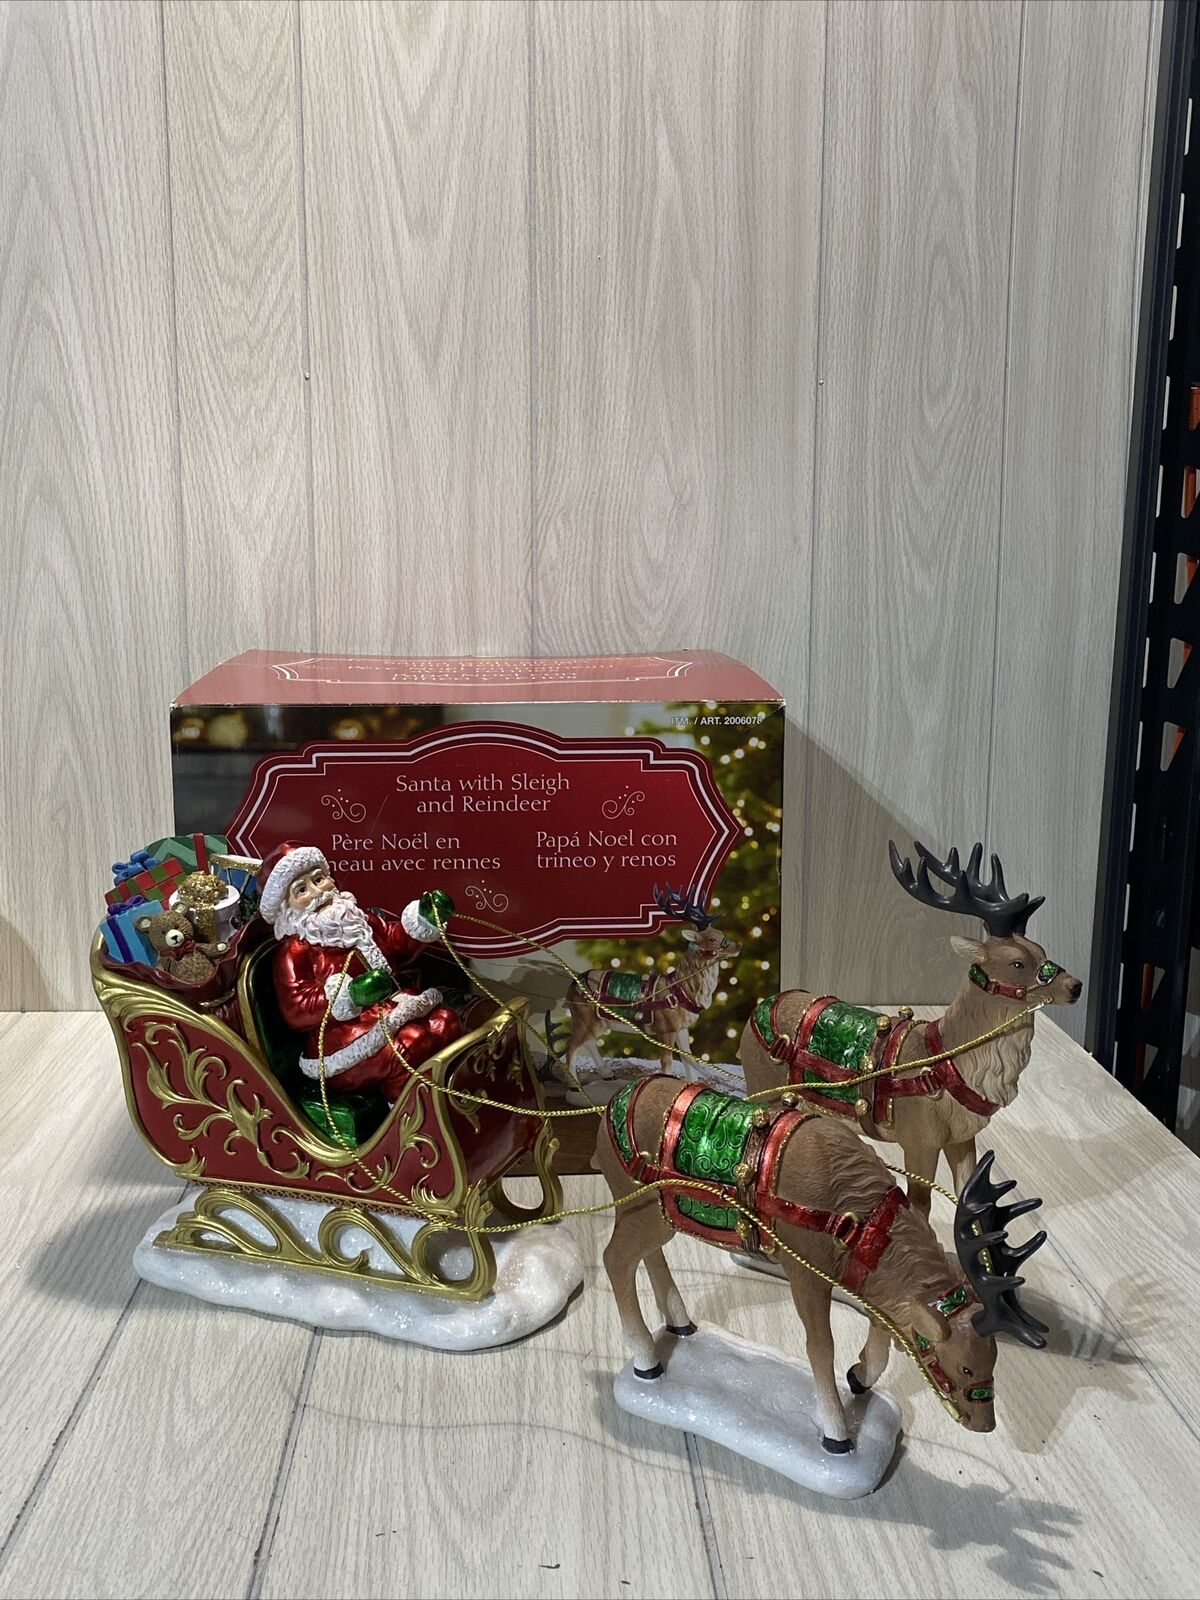 Costco Exclusive 9” Santa with Sleigh & Reindeer Tabletop Centerpiece Figures